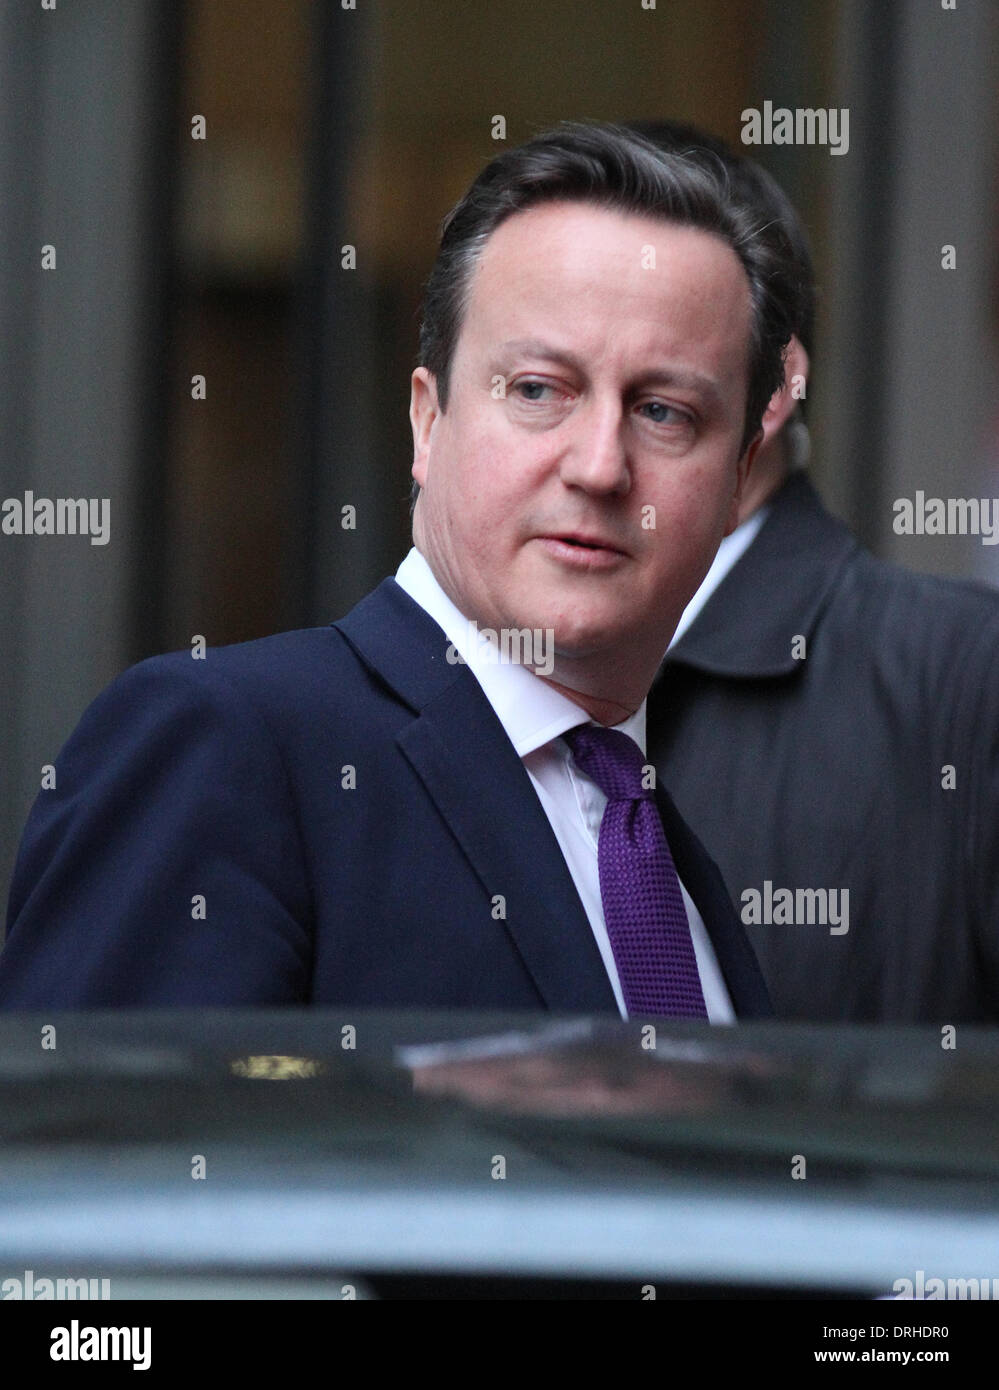 Londres, Reino Unido, 27 de enero de 2014. David Cameron, Primer Ministro del Reino Unido, Primer Lord del Tesoro, Ministro para la Foto de stock